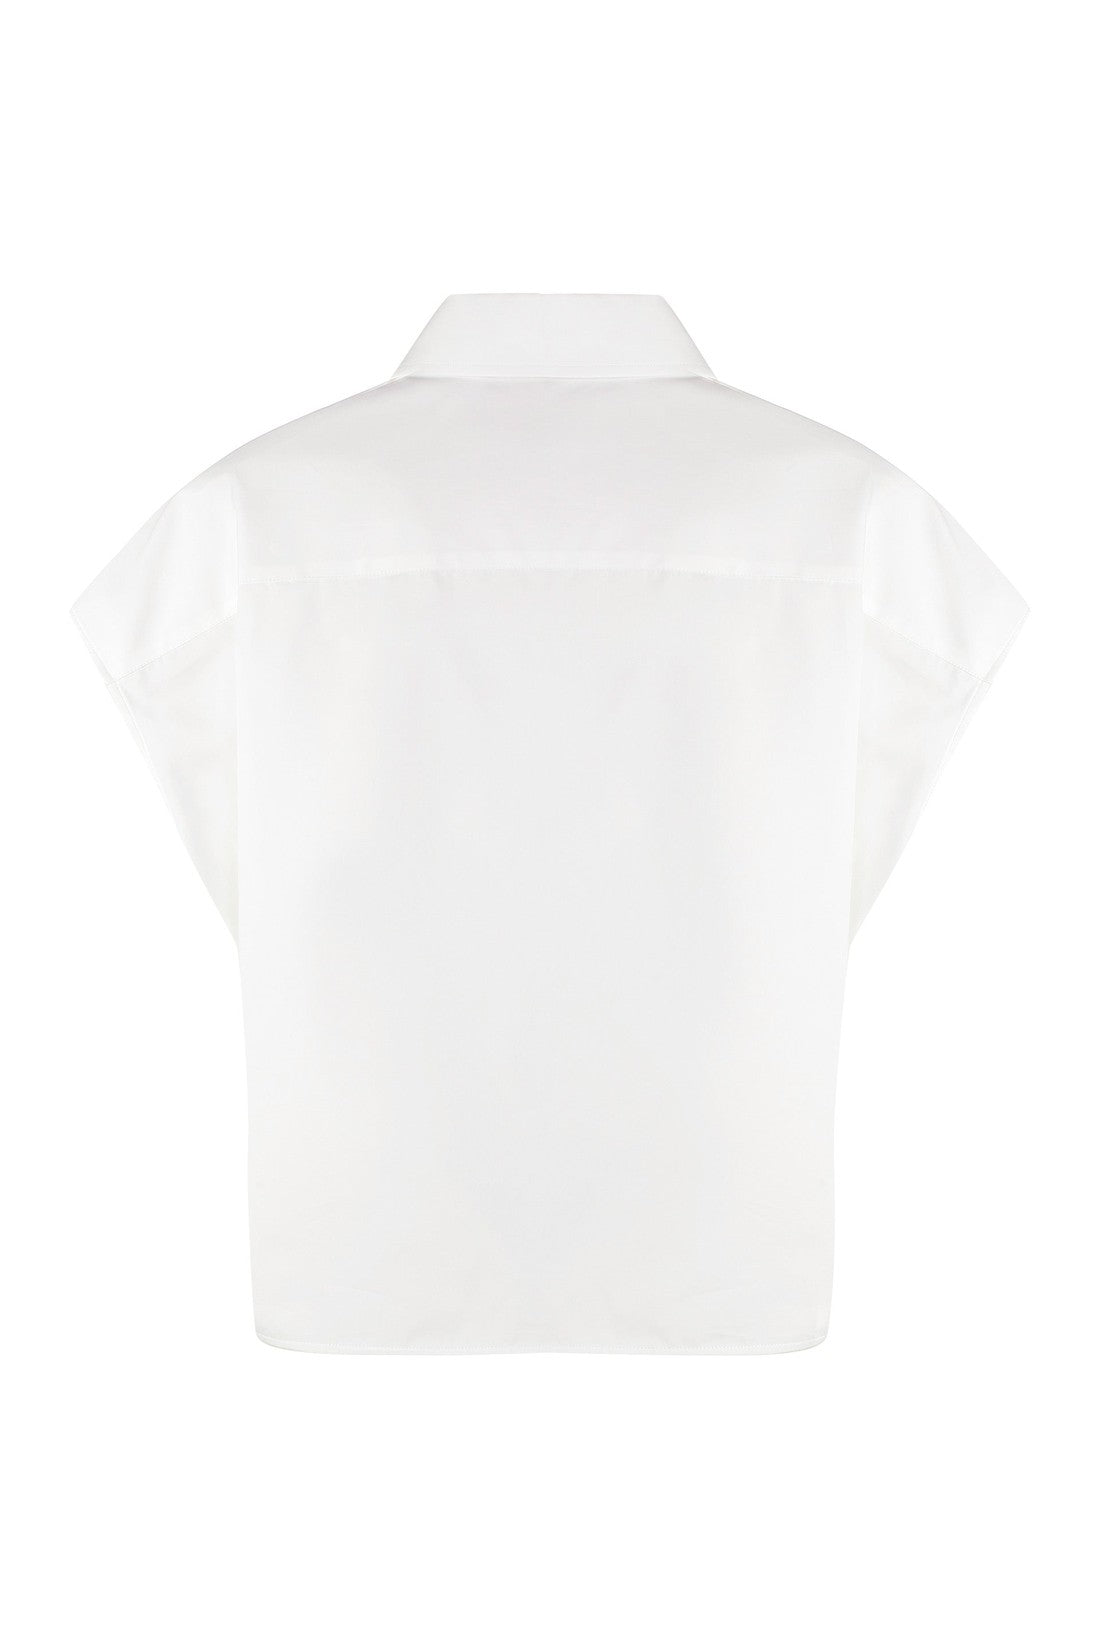 Fabiana Filippi-OUTLET-SALE-Cotton shirt-ARCHIVIST